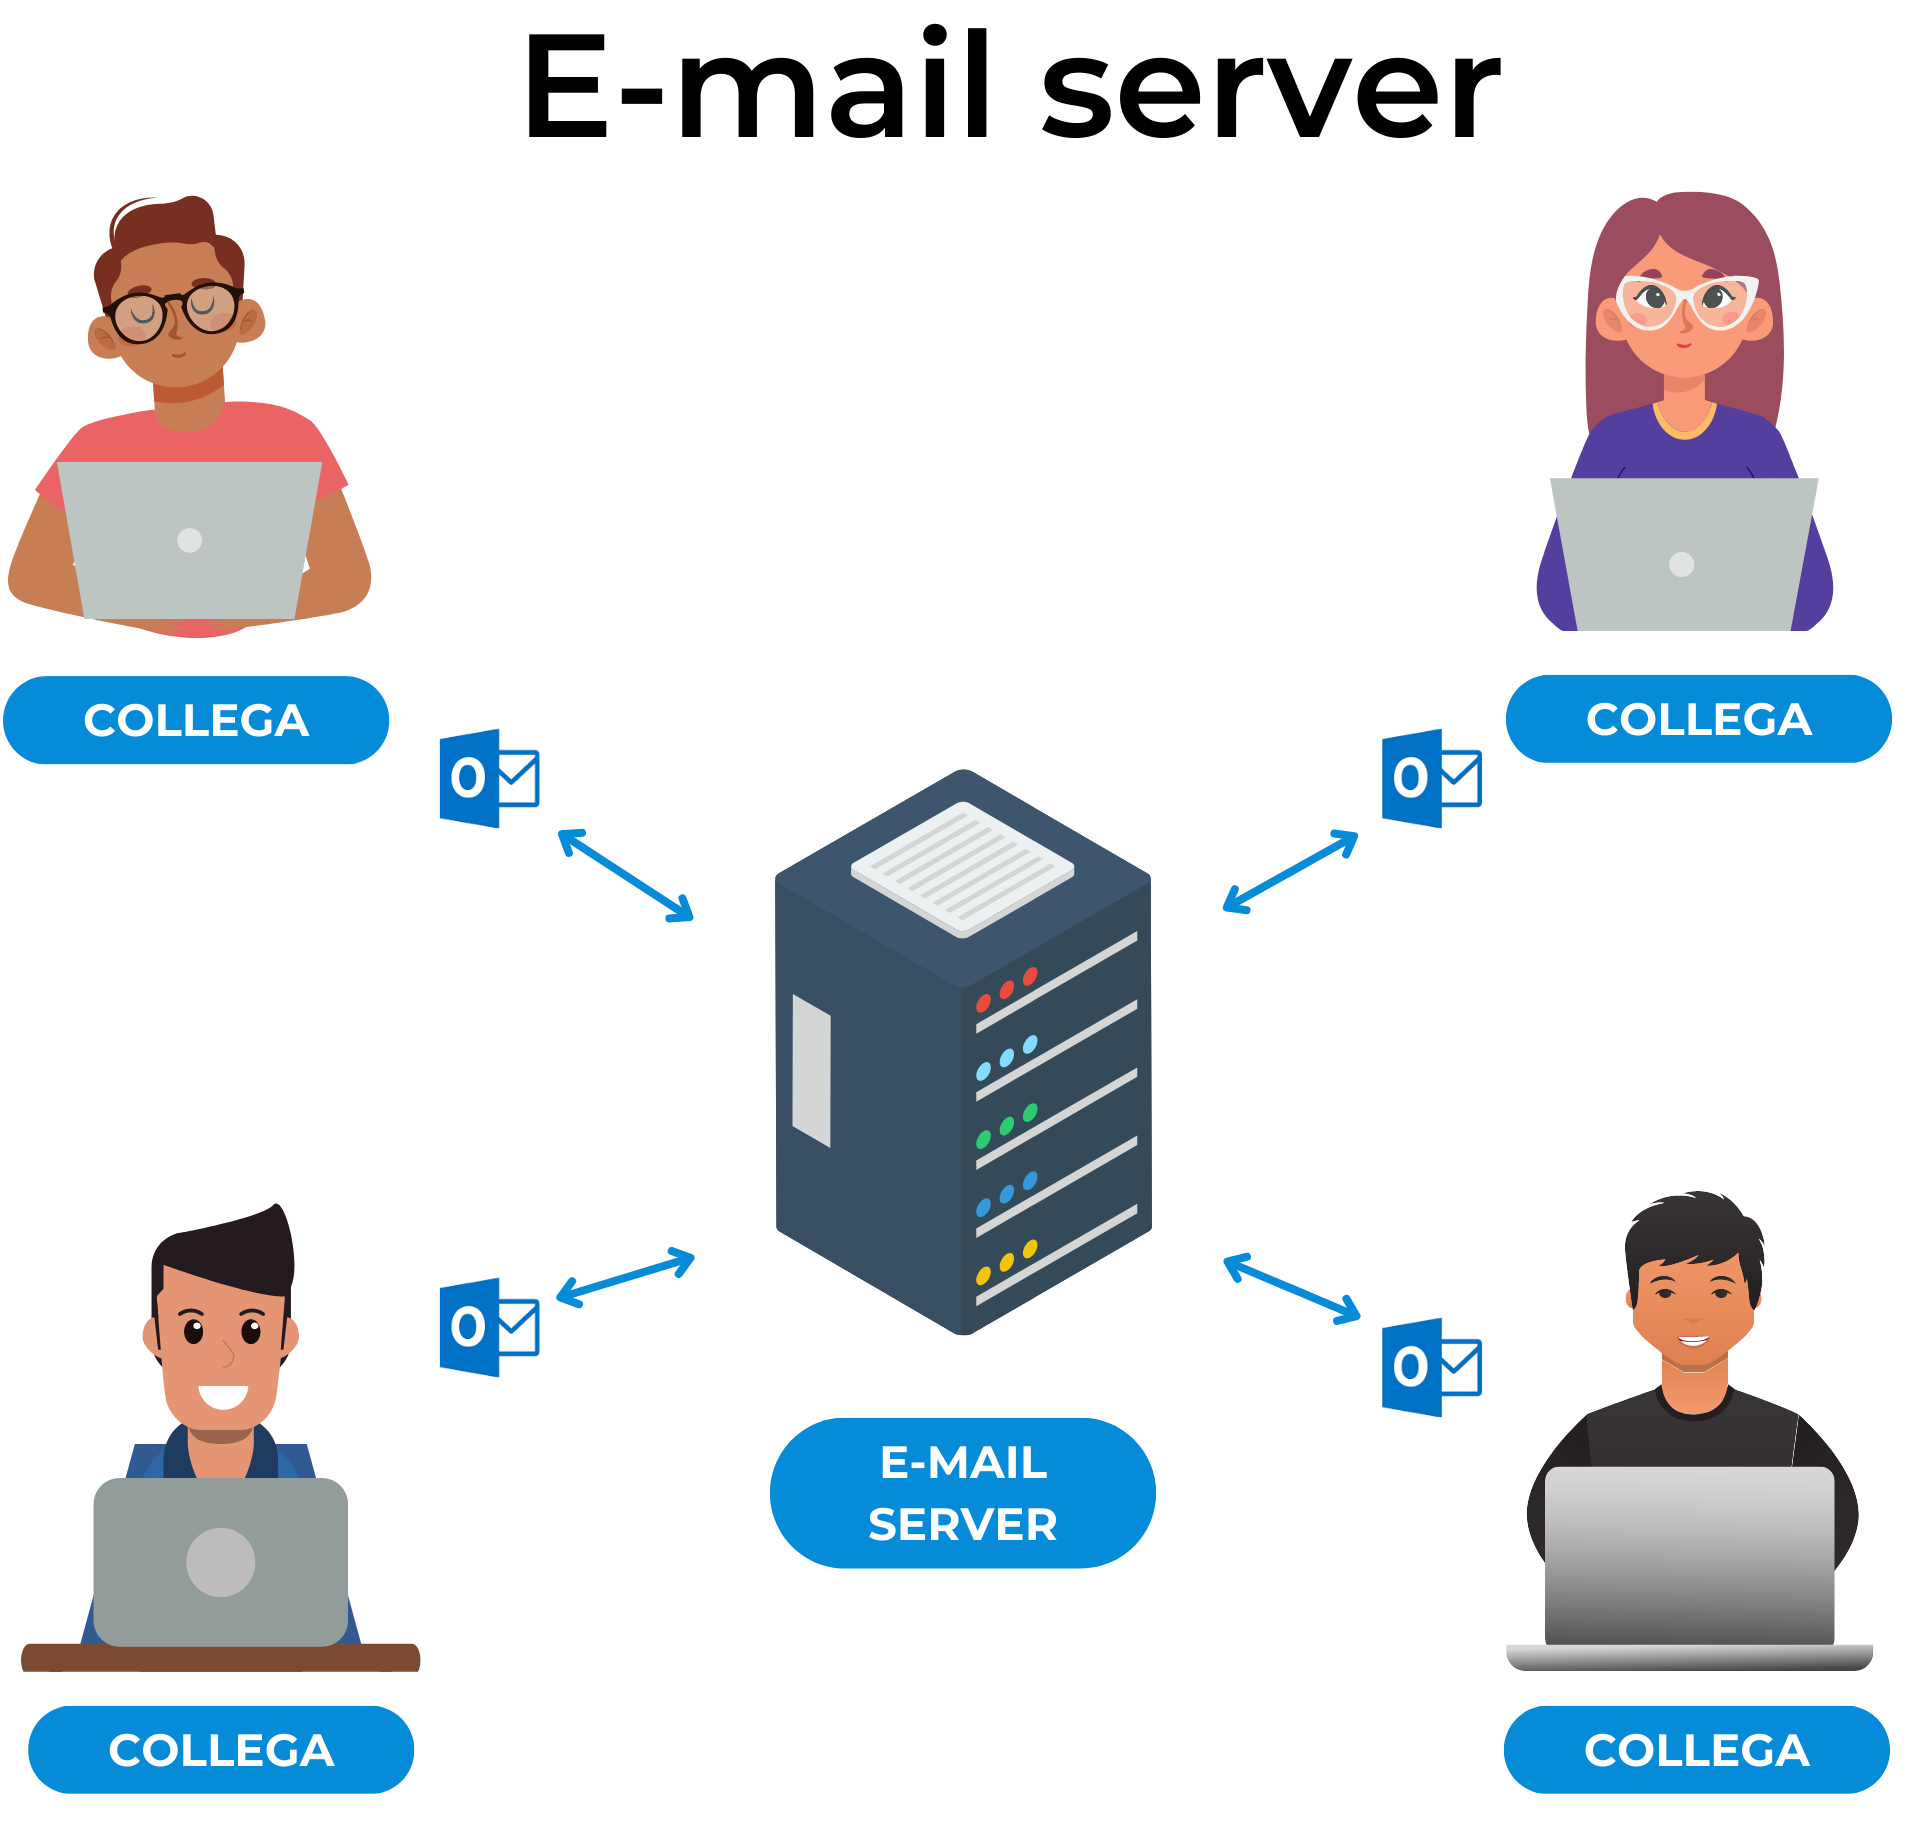 E-mail server